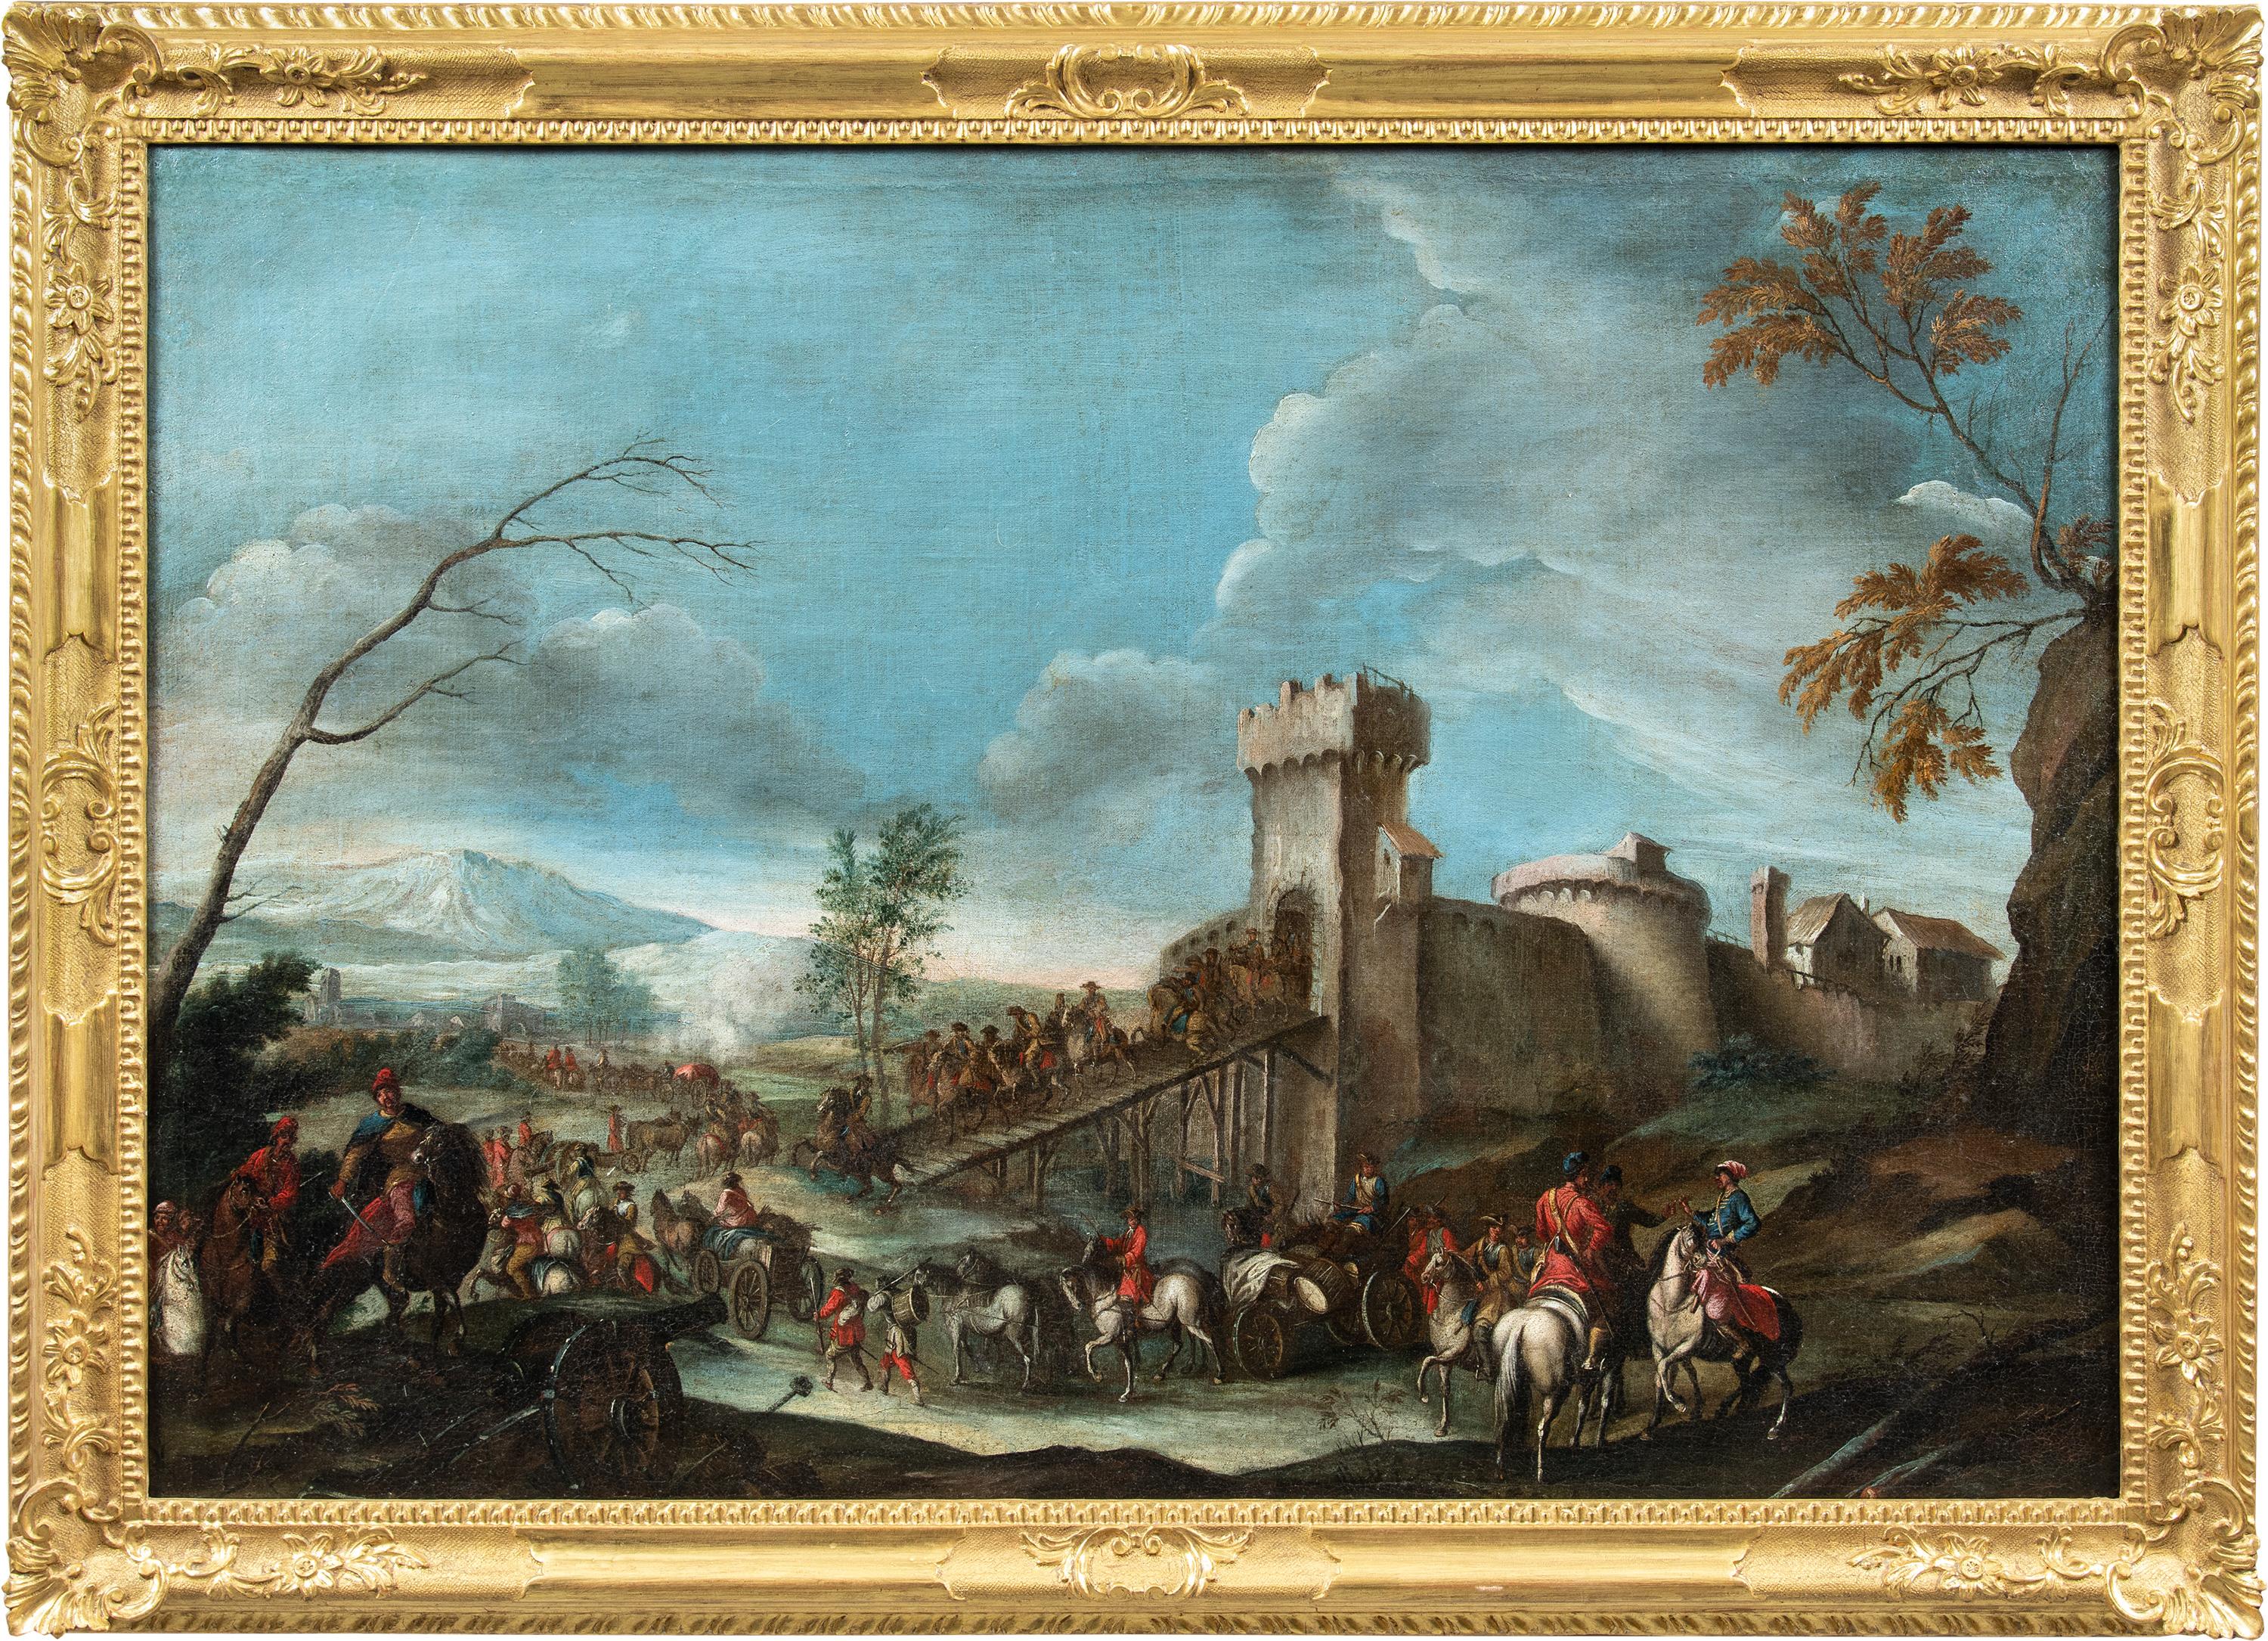 Landscape Painting Christian Reder (Monsù Leandro) - Christian Reder (Italie) - Peinture de paysage italienne du XVIIIe siècle - Soldats